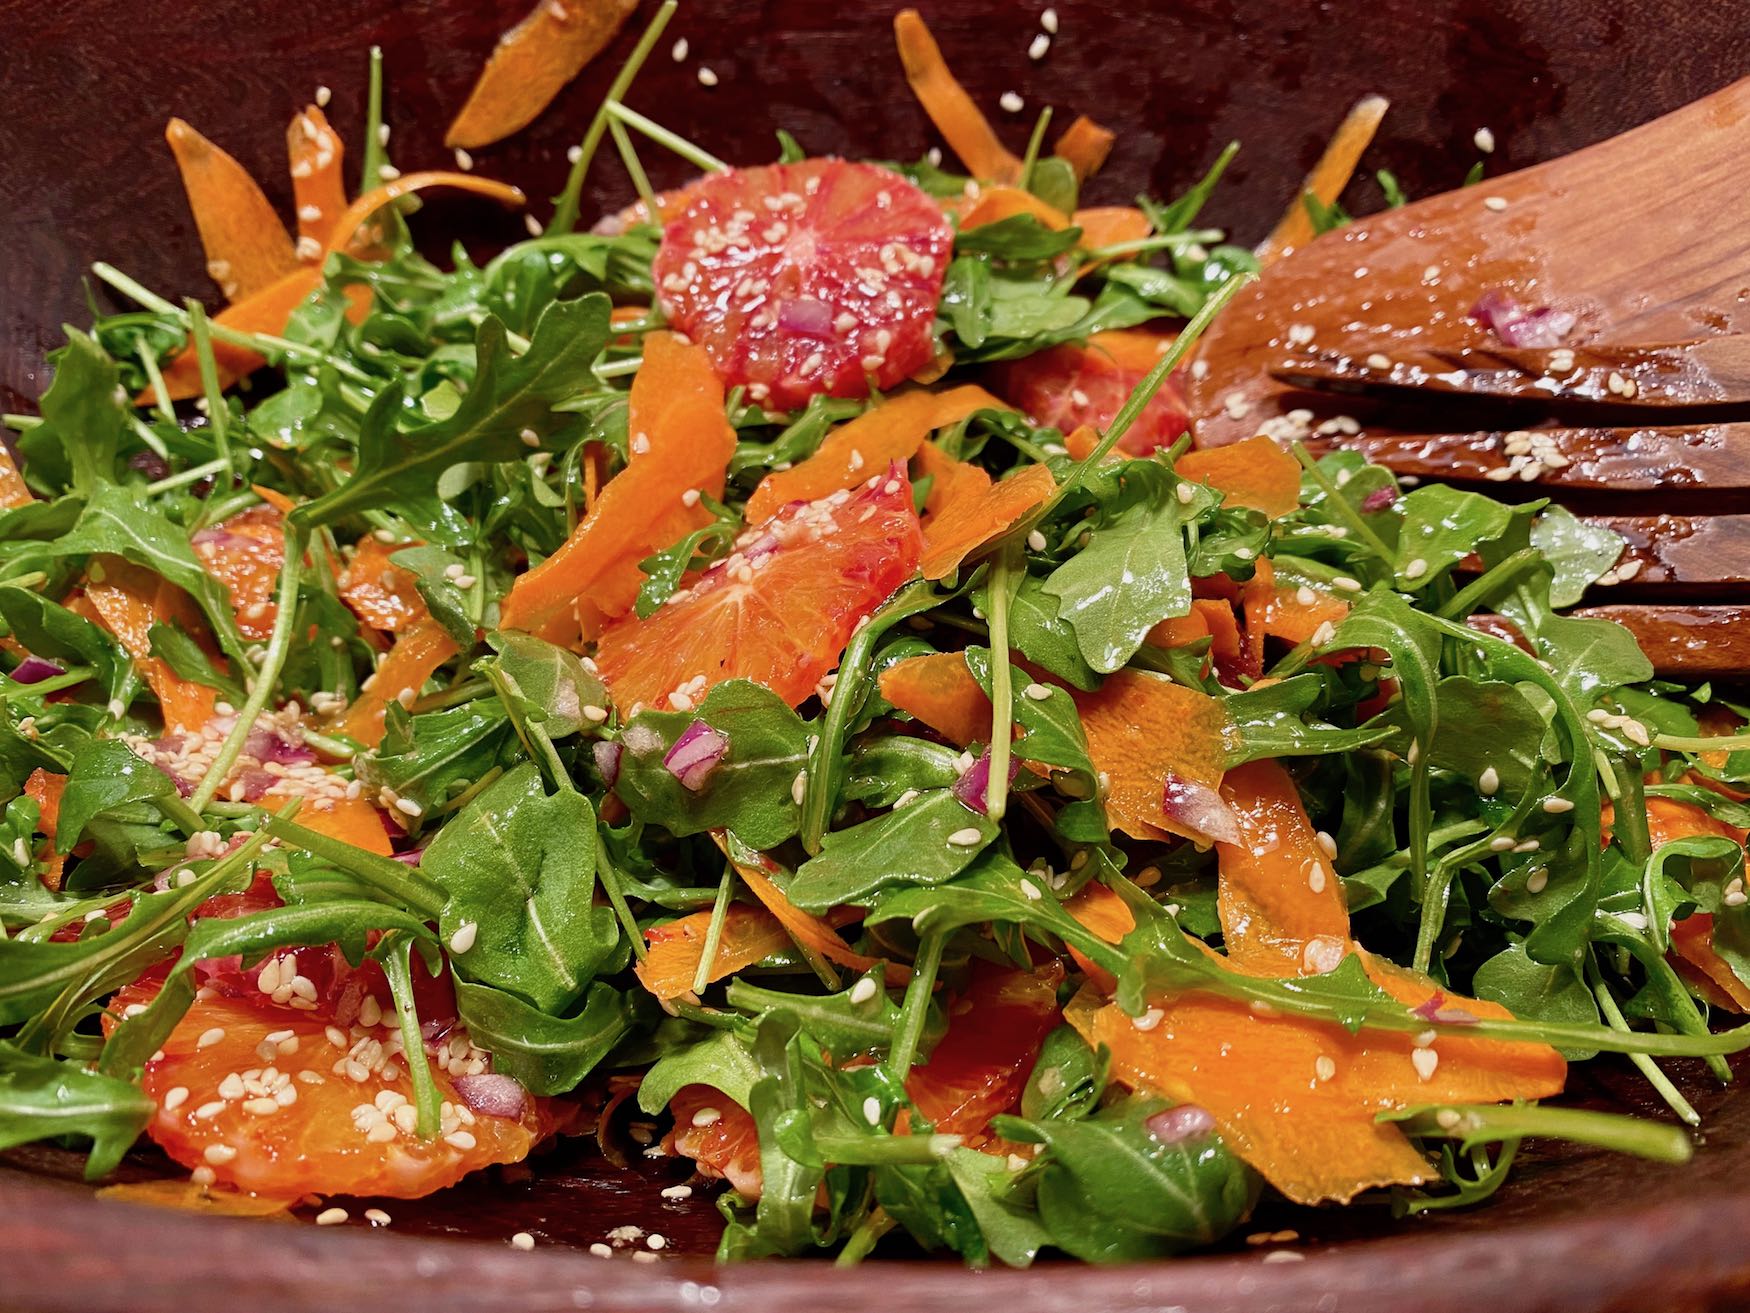 Carrot, Arugula and Blood Orange Salad with Ginger Vinaigrette